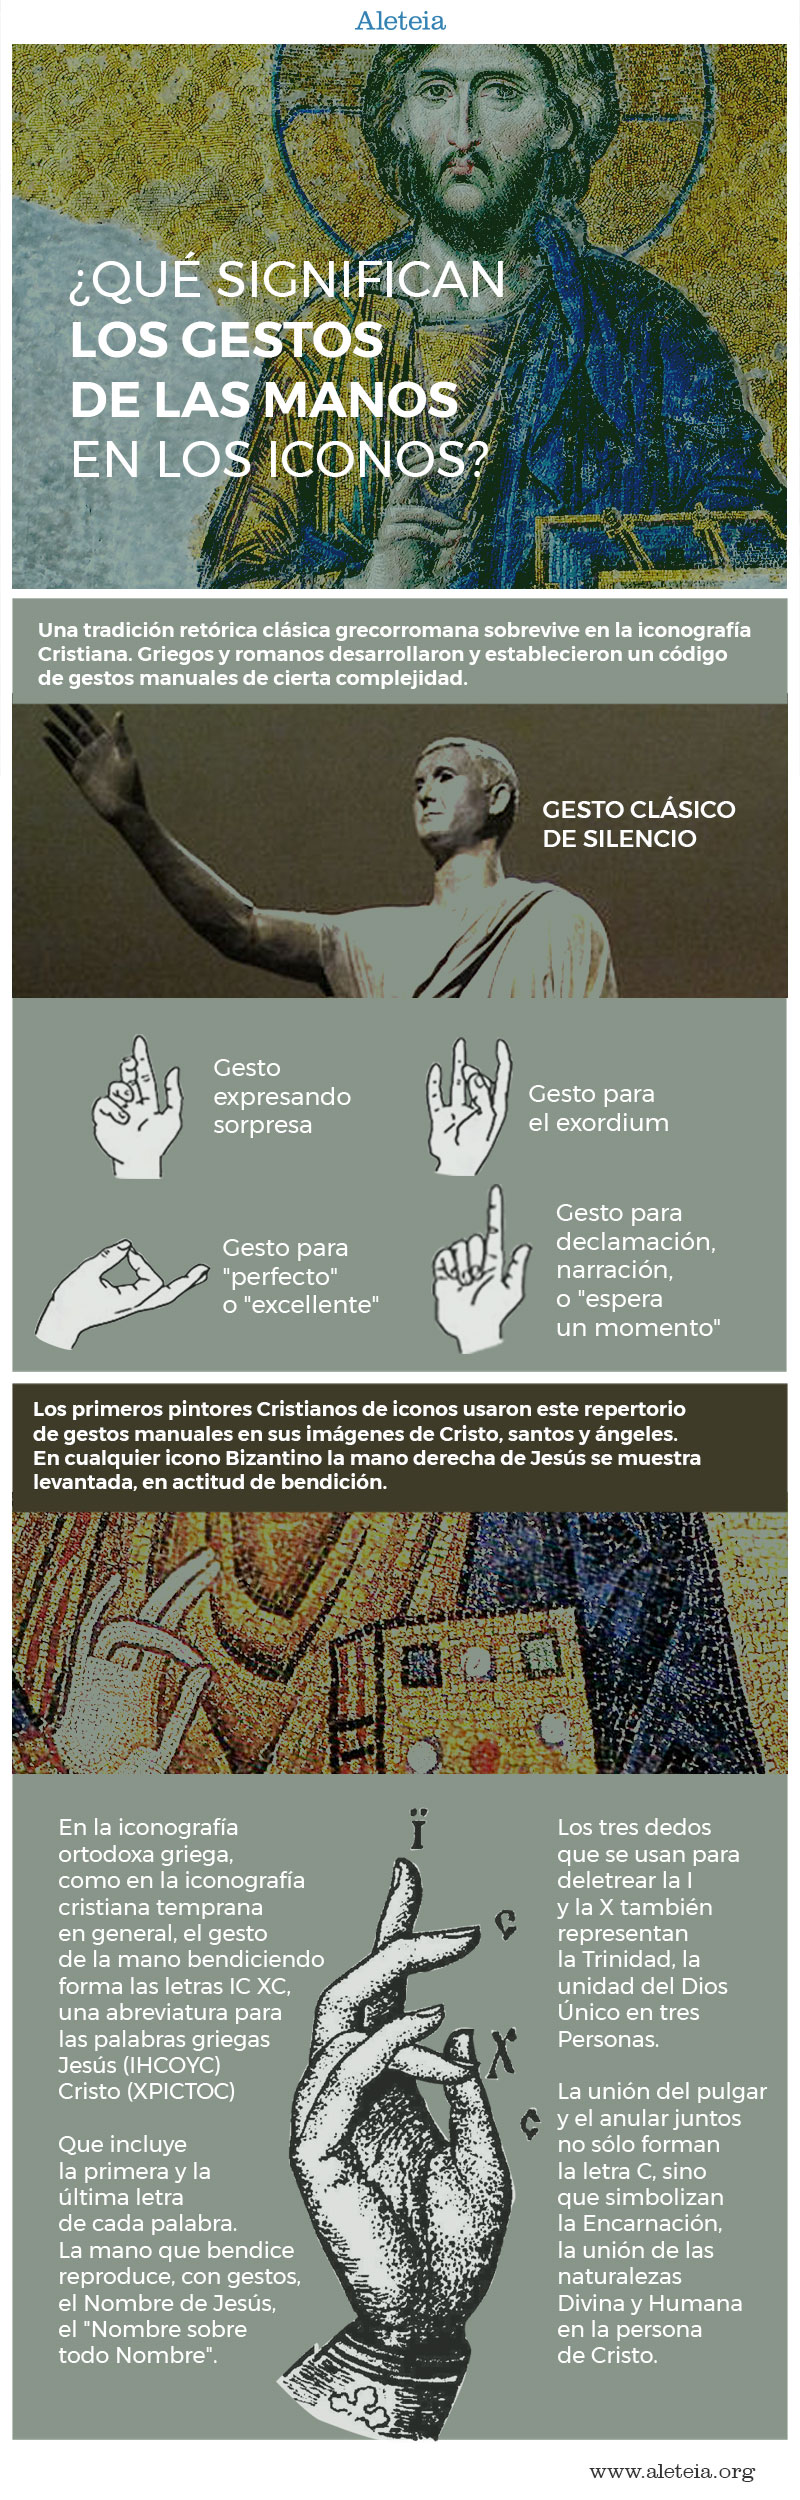 Hand_Gestures_Aleteia_es